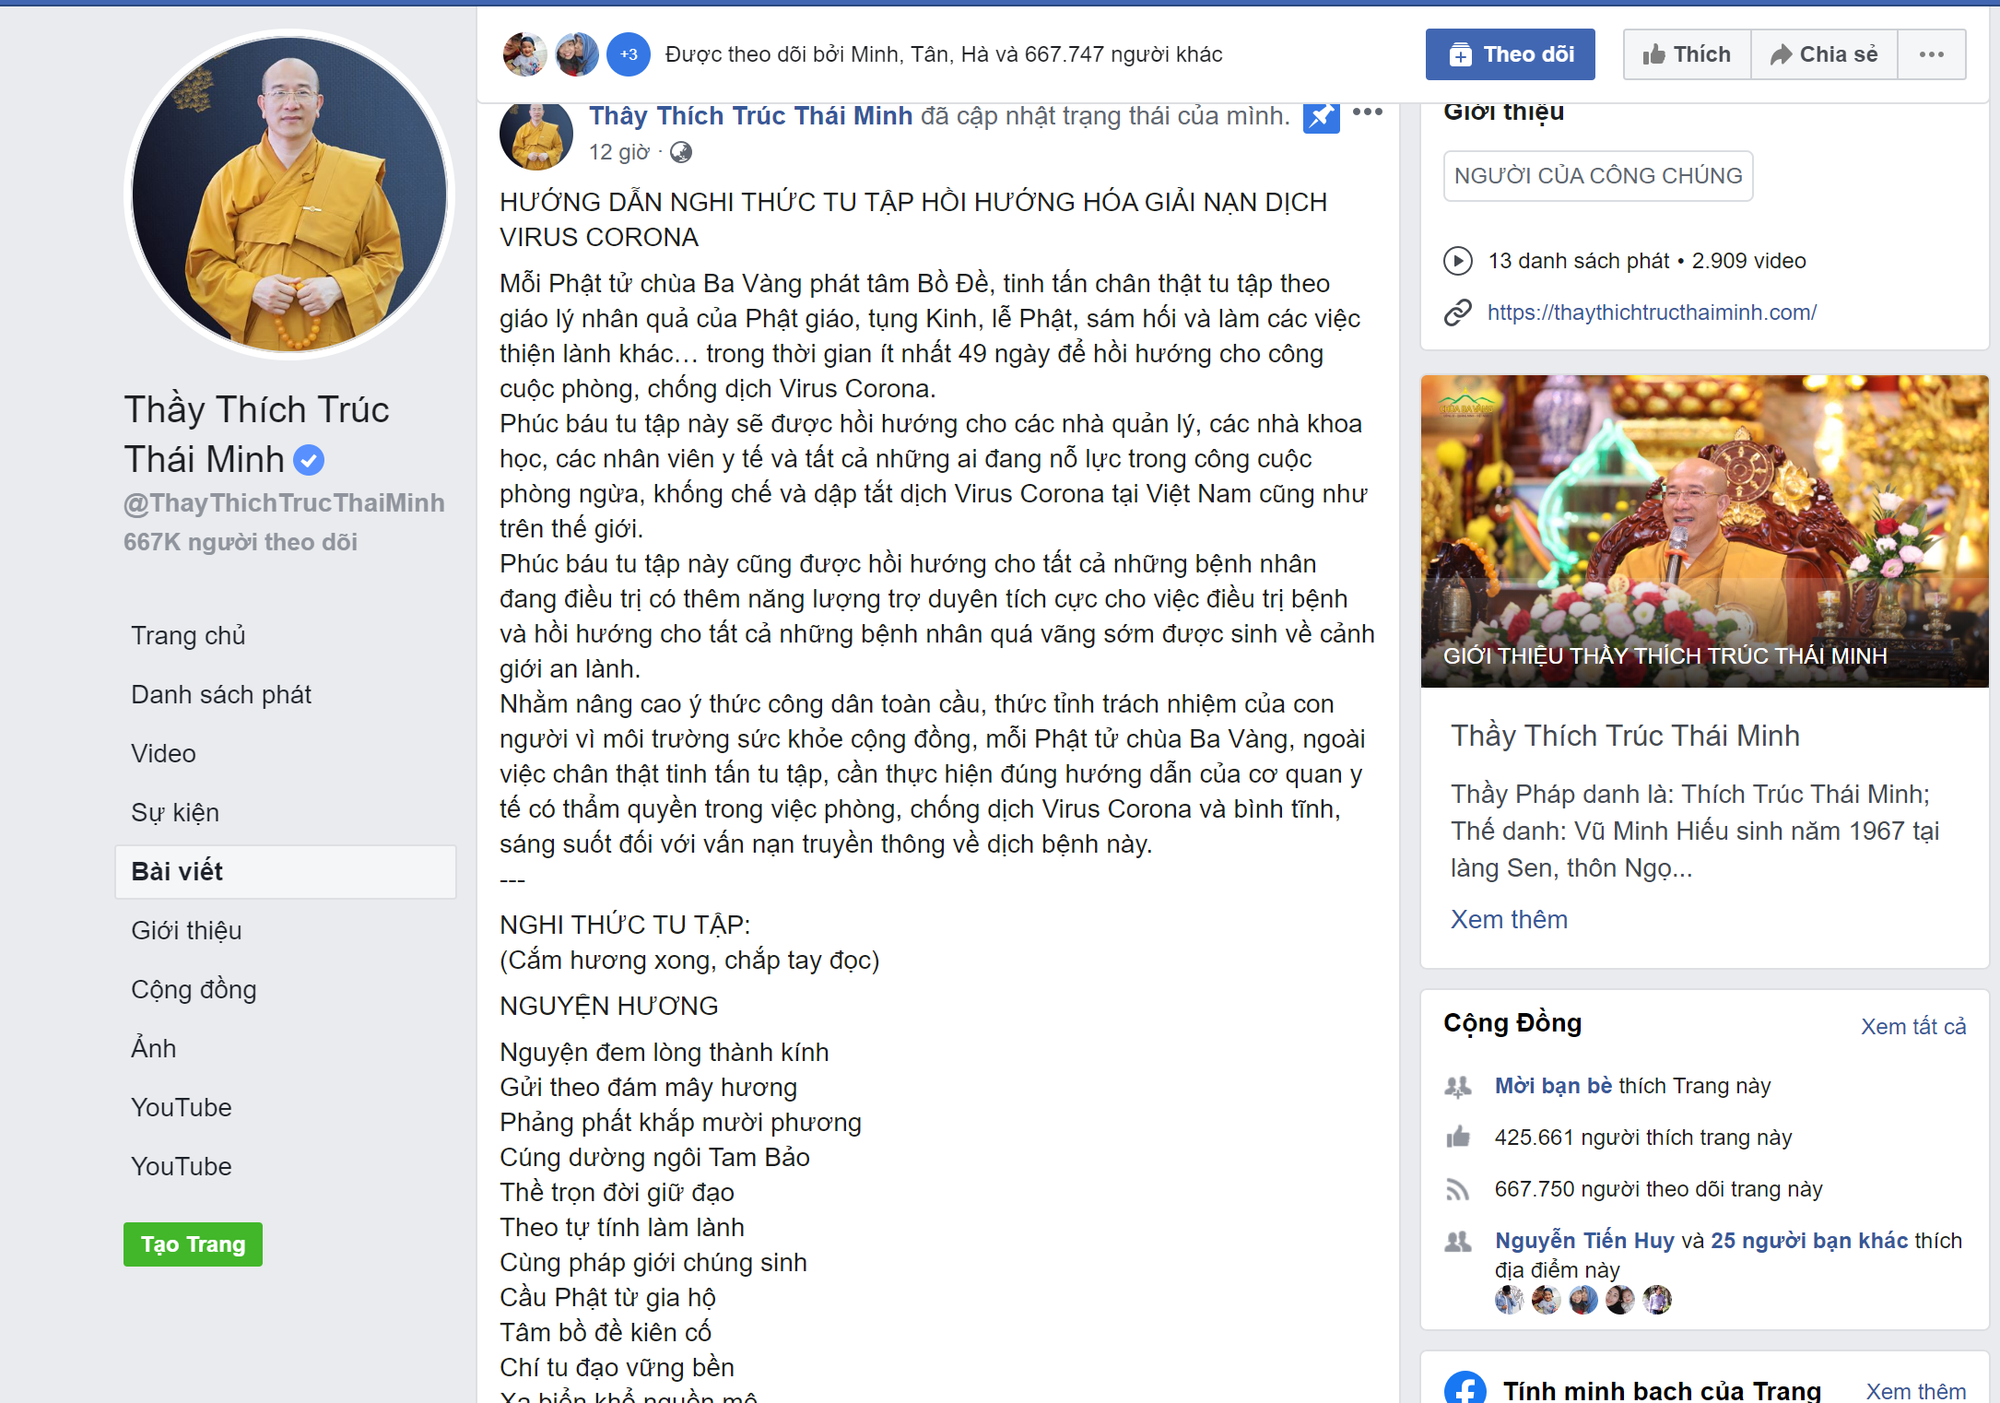 Facebook Thích Trúc Thái Minh tiếp tục rao giảng nghi thức tu tập hồi hướng hóa giải nạn dịch virus Corona - Ảnh 2.